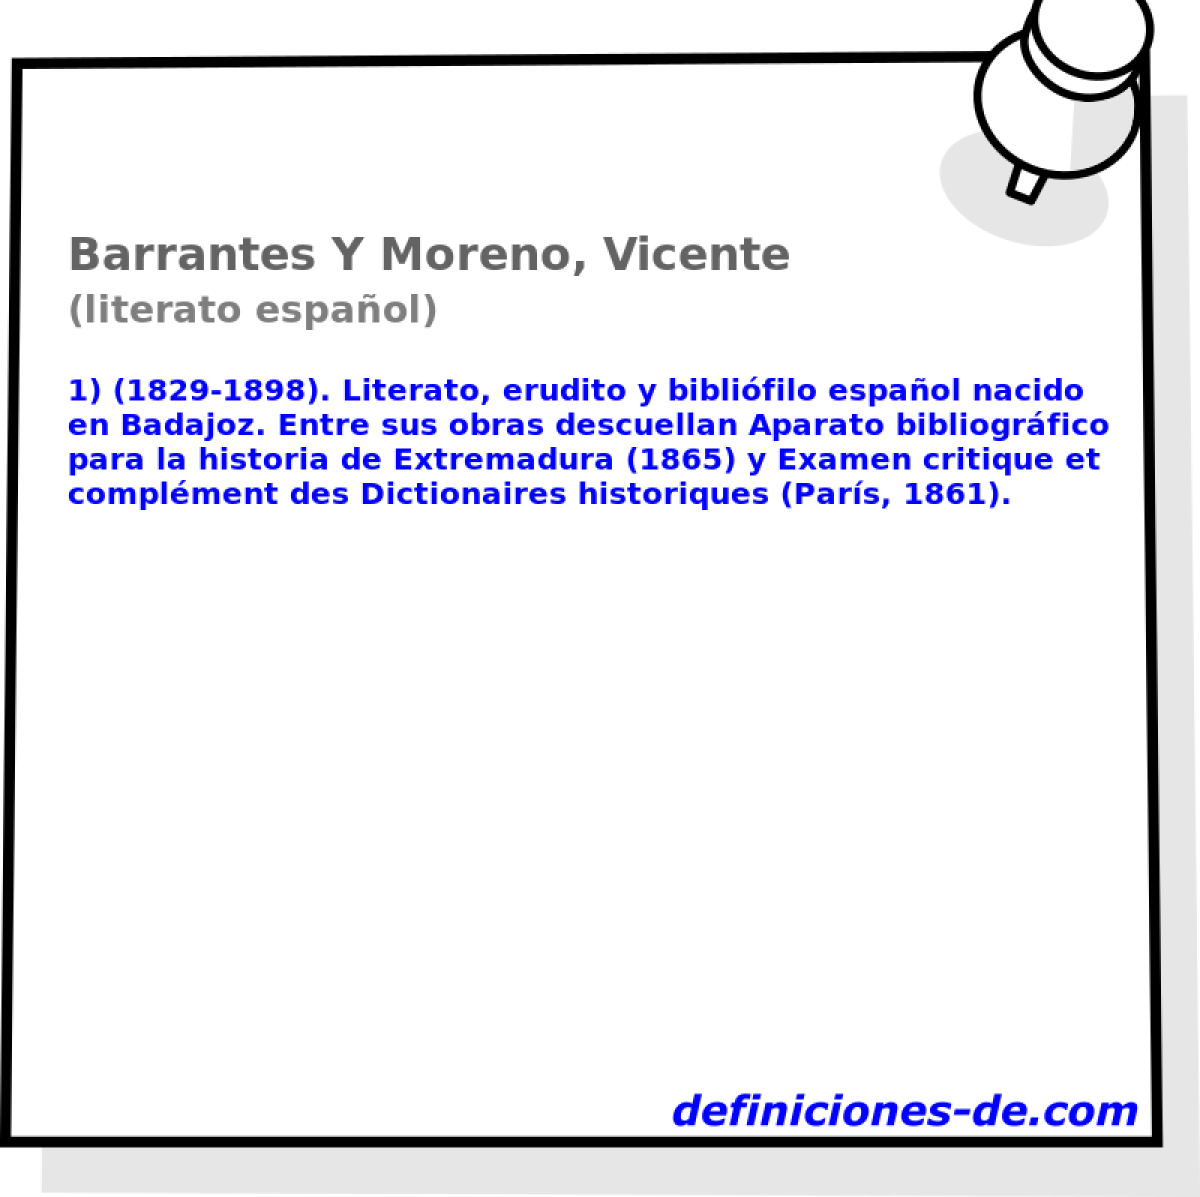 Barrantes Y Moreno, Vicente (literato espaol)